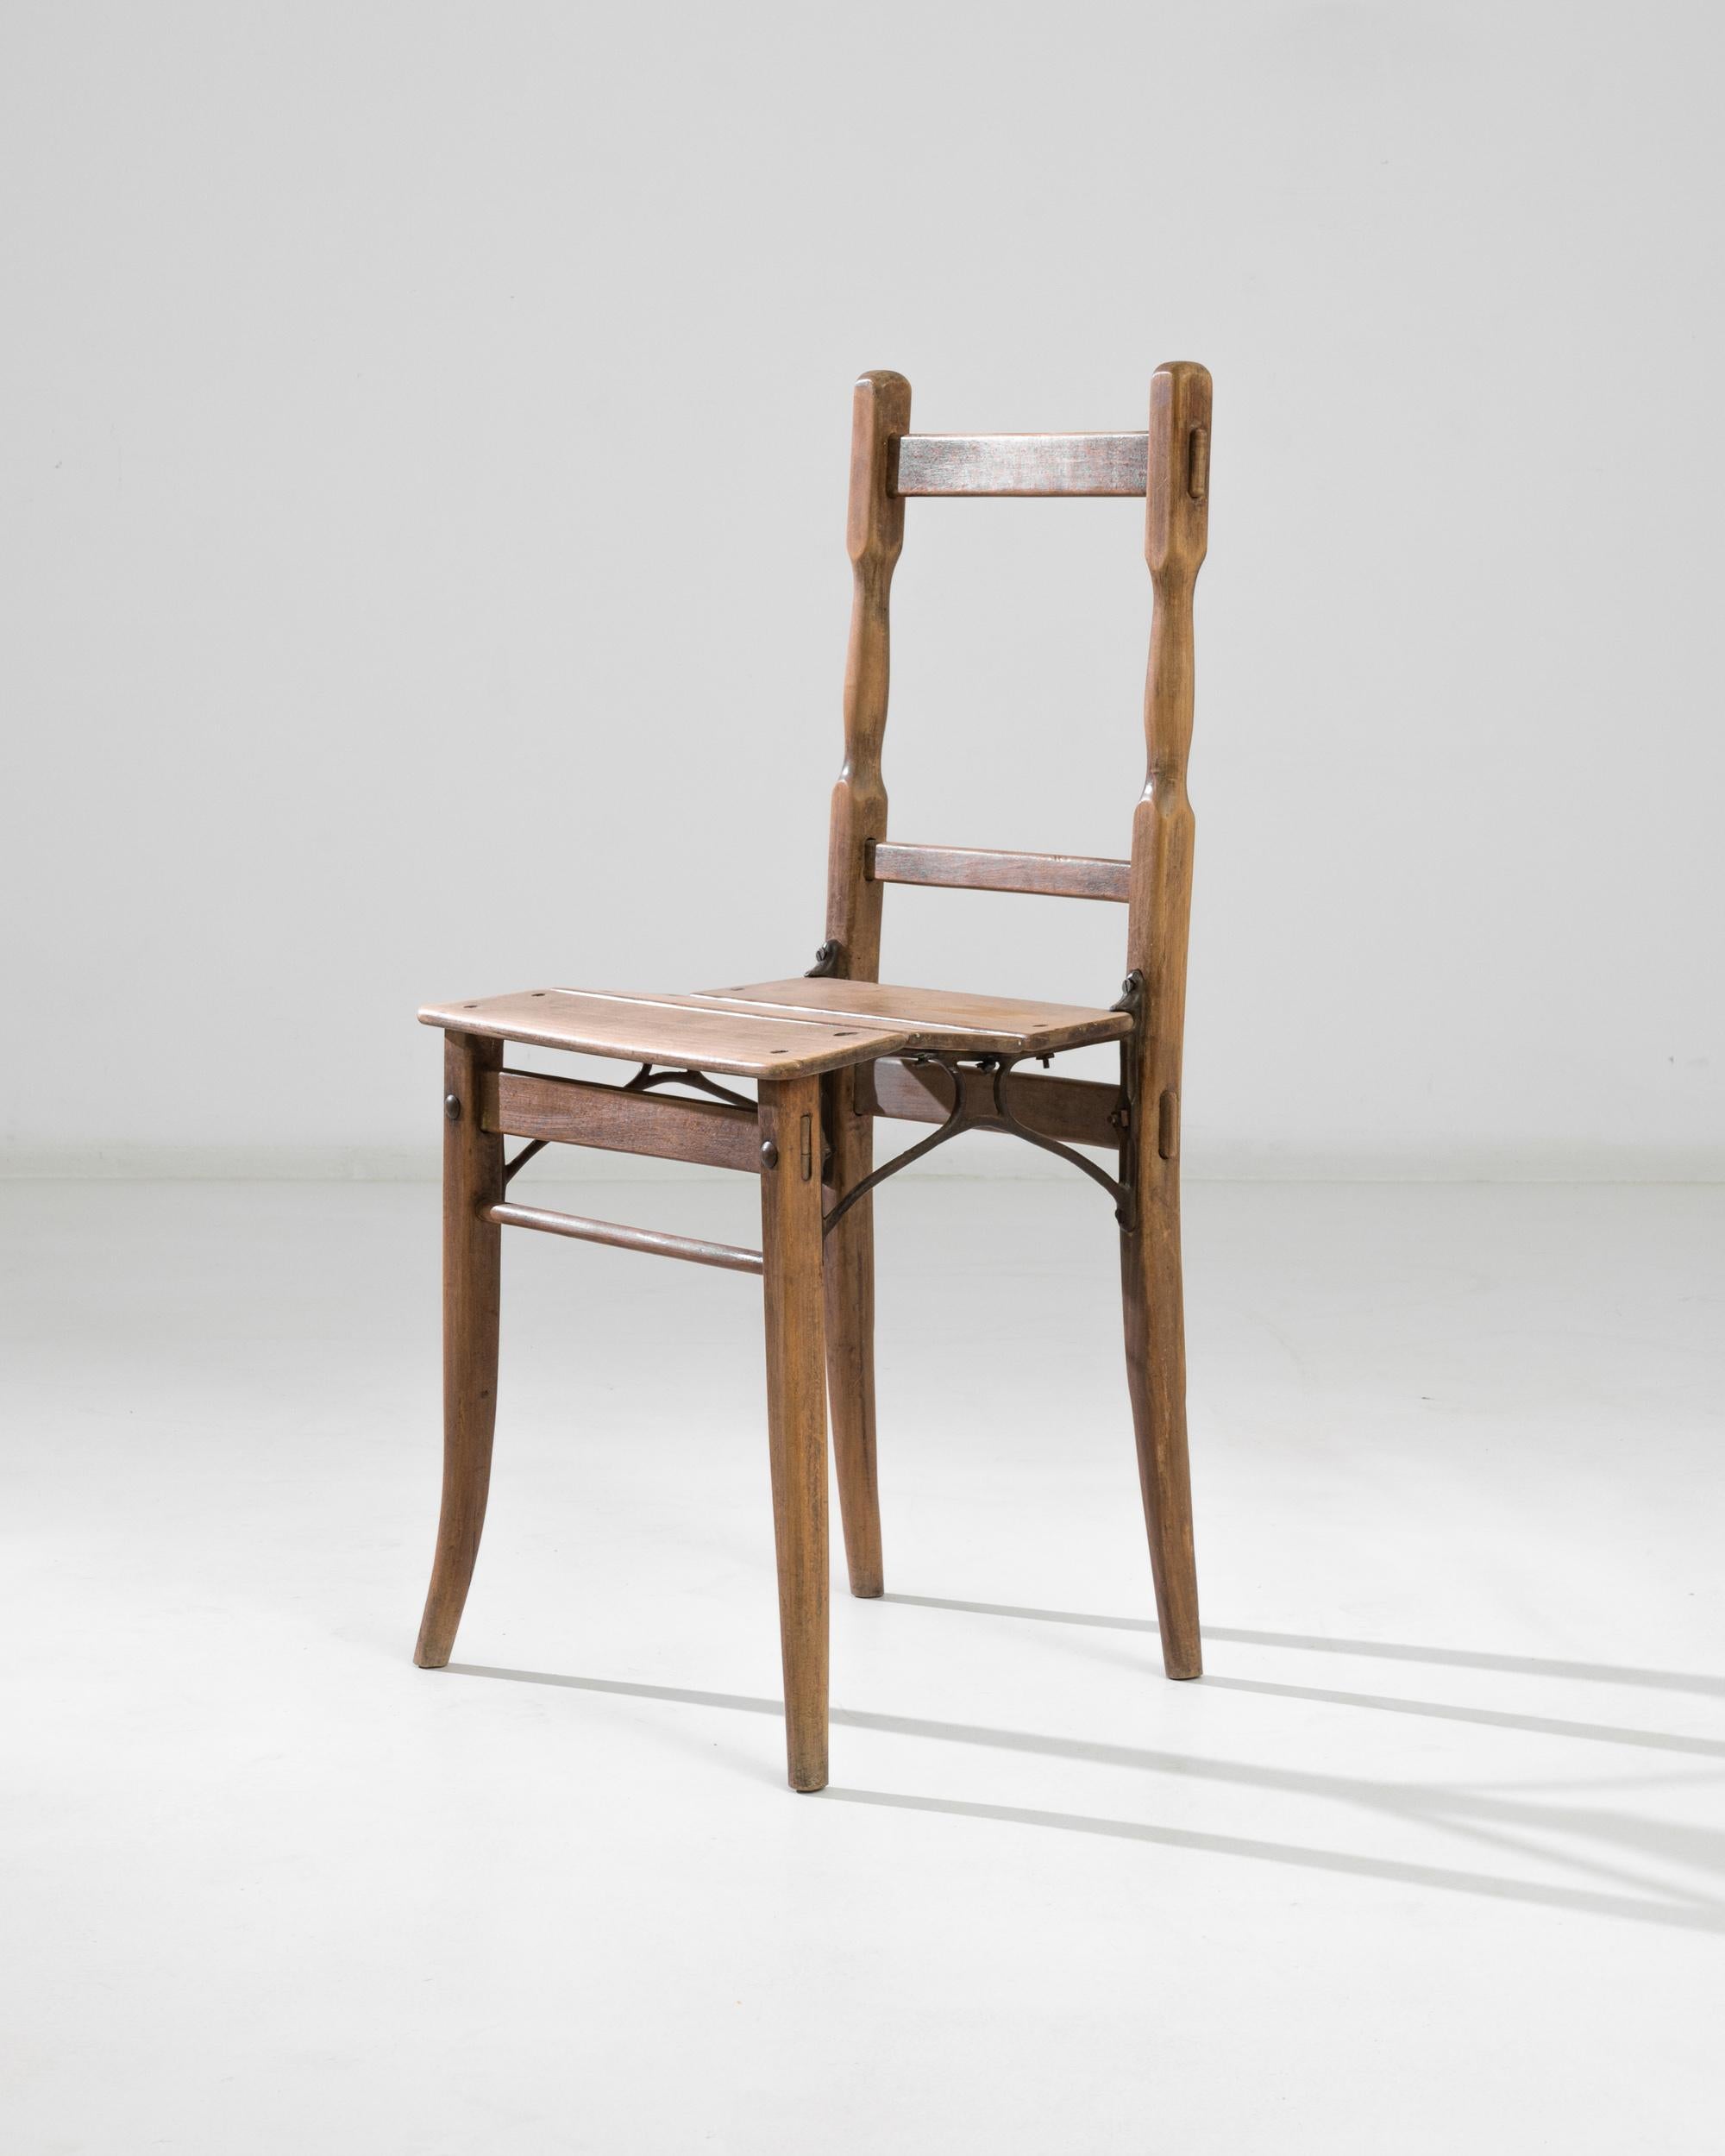 Adoptez une touche de charme d'Europe centrale avec cette chaise d'appoint en bois unique des années 1900. Artistics avec un design qui se démarque, la chaise comporte des supports en métal sous l'assise, offrant un mélange de robustesse et de flair